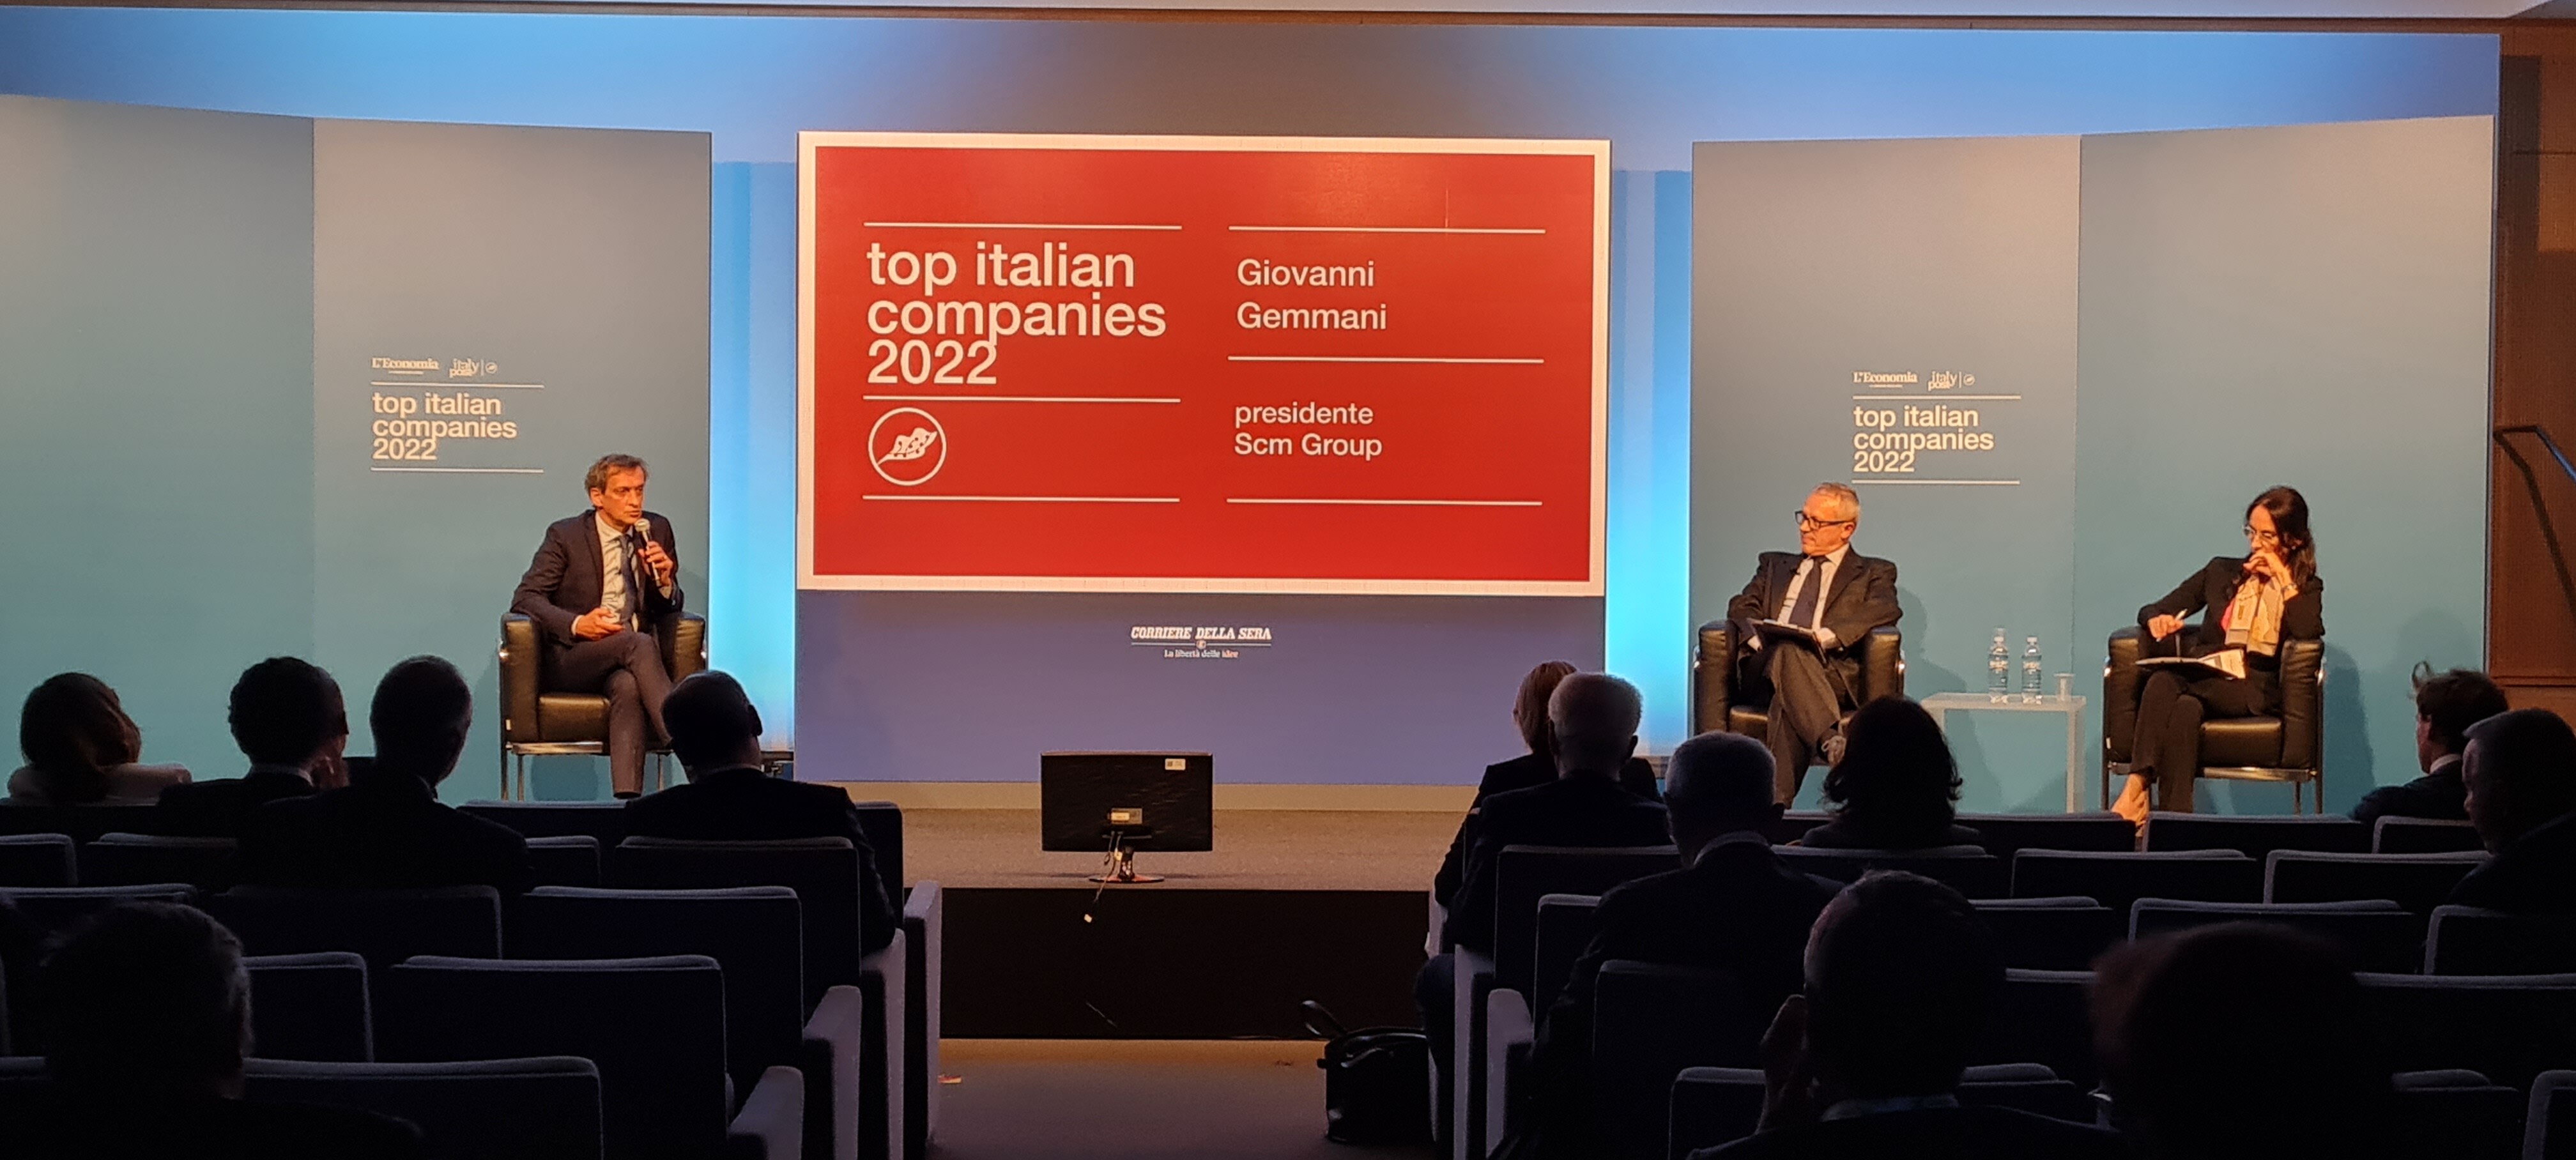 bevæge sig justere jeg lytter til musik Scm Group among the 100 Top Italian Companies 2022